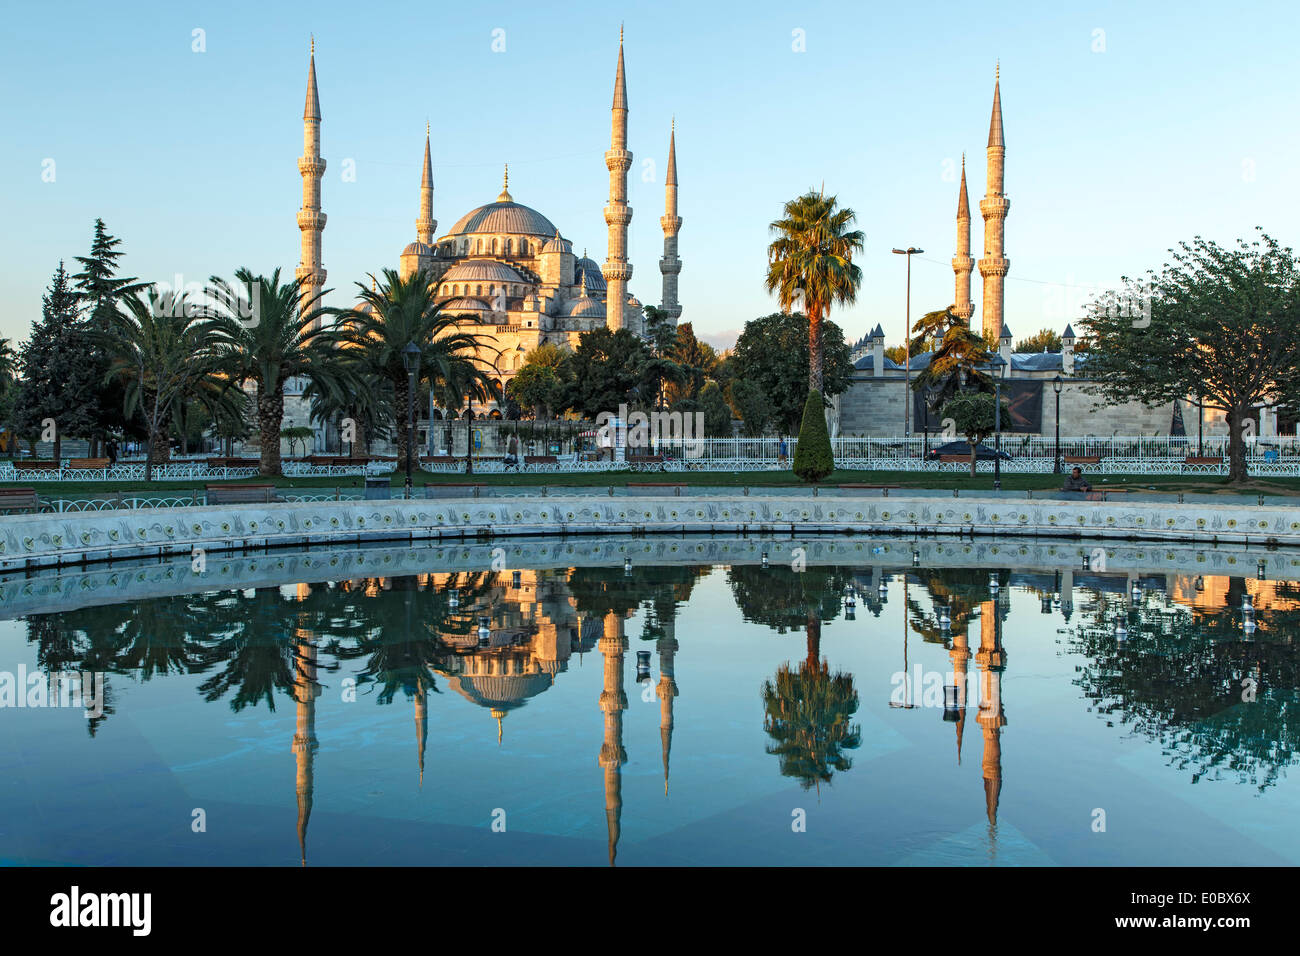 Blaue Moschee spiegelt sich am Pool, Istanbul, Türkei Stockfoto